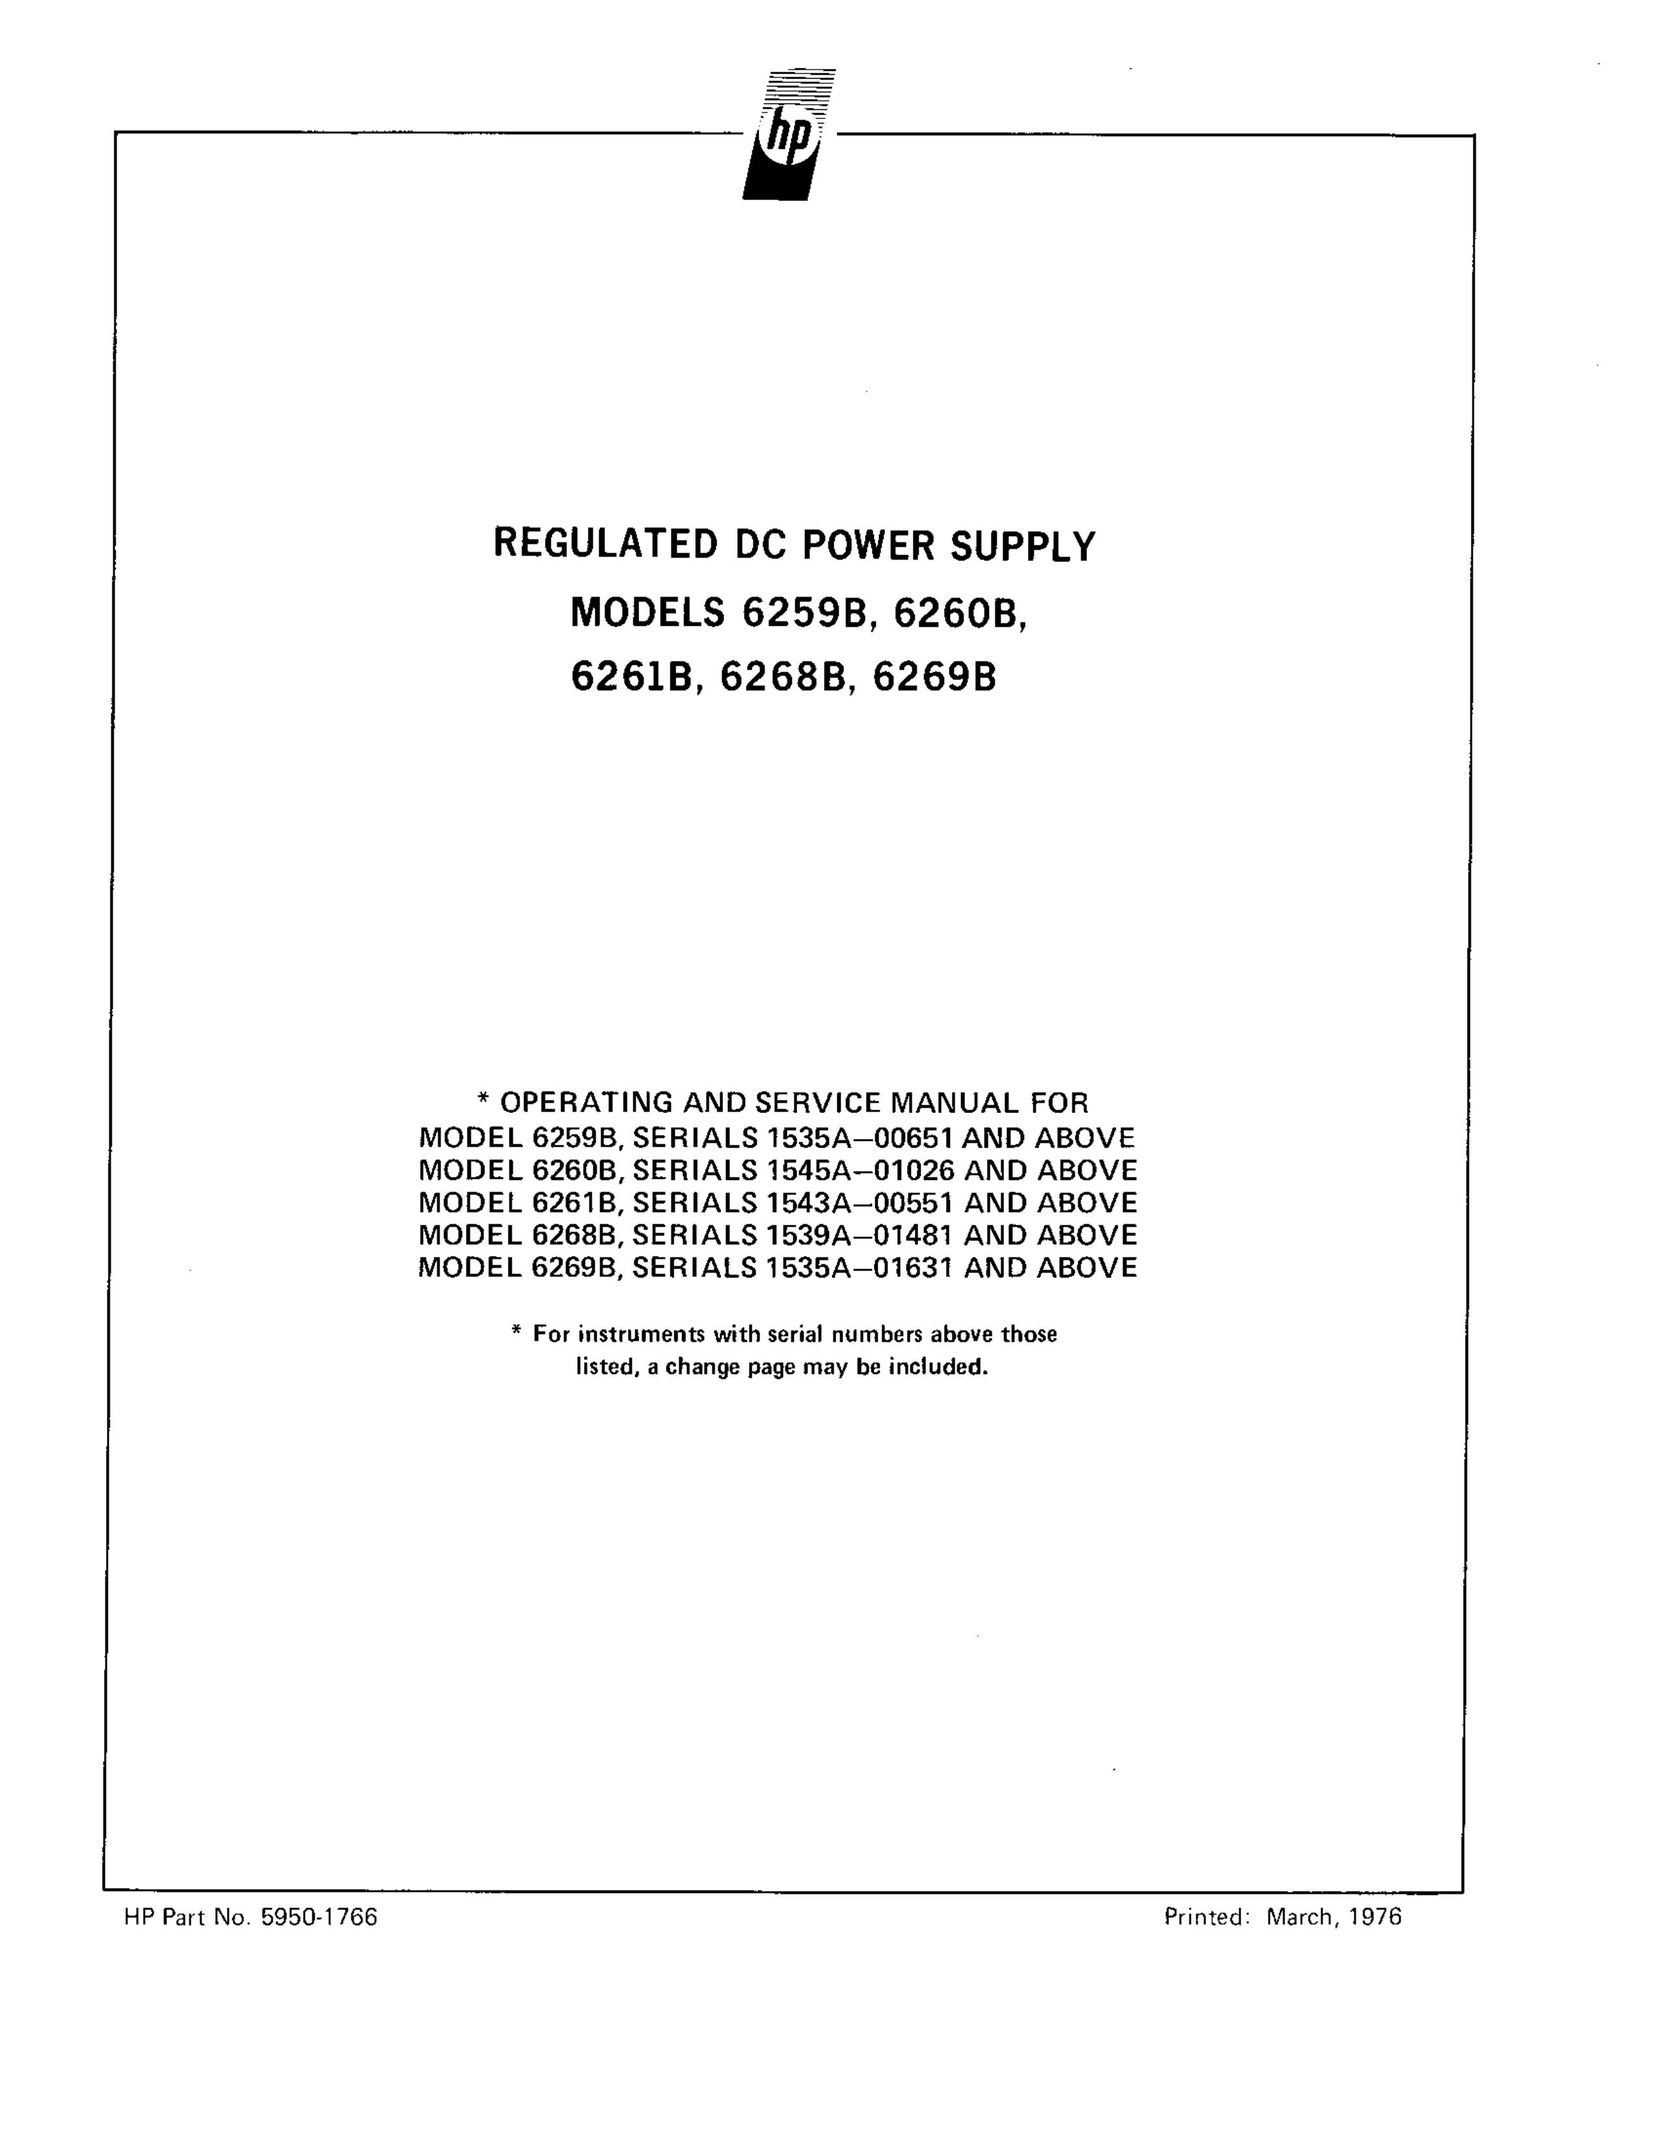 HP (Hewlett-Packard) 6261B Power Supply User Manual